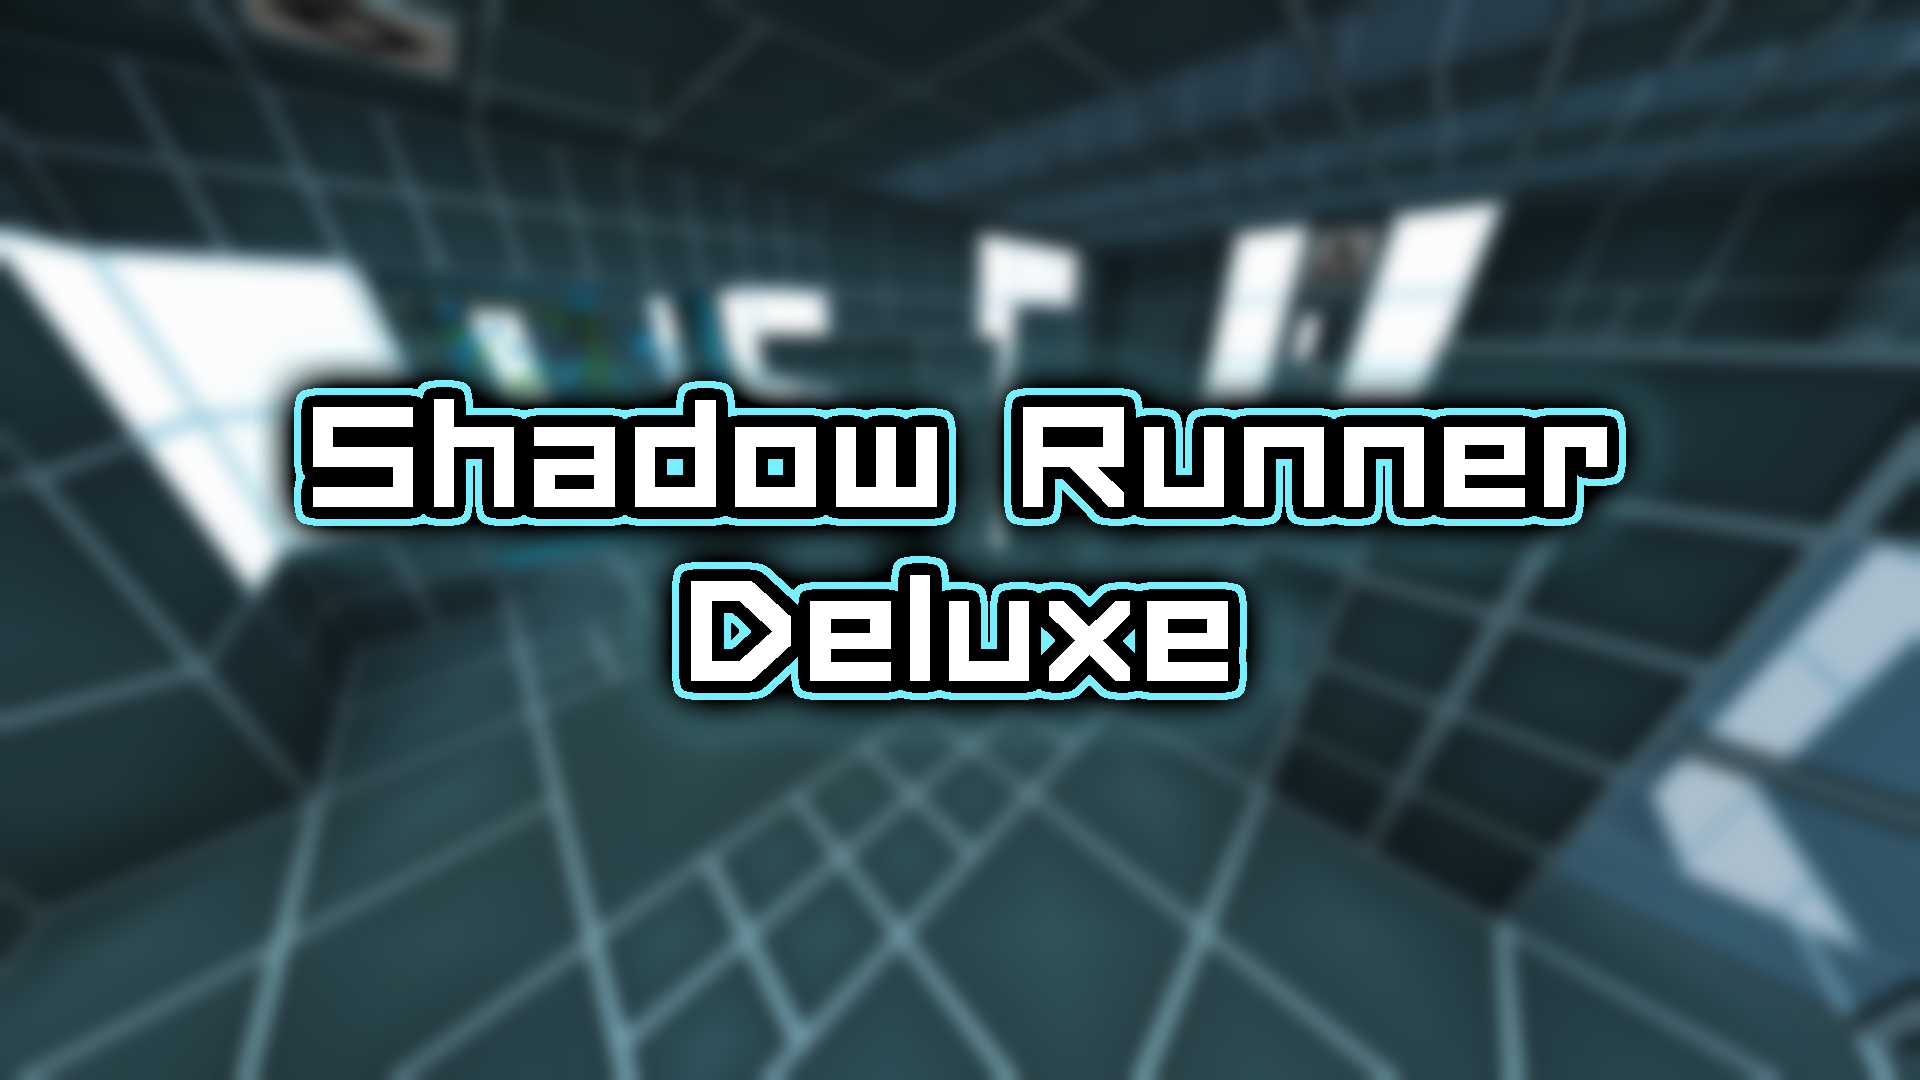 İndir Shadow Runner Deluxe için Minecraft 1.14.4